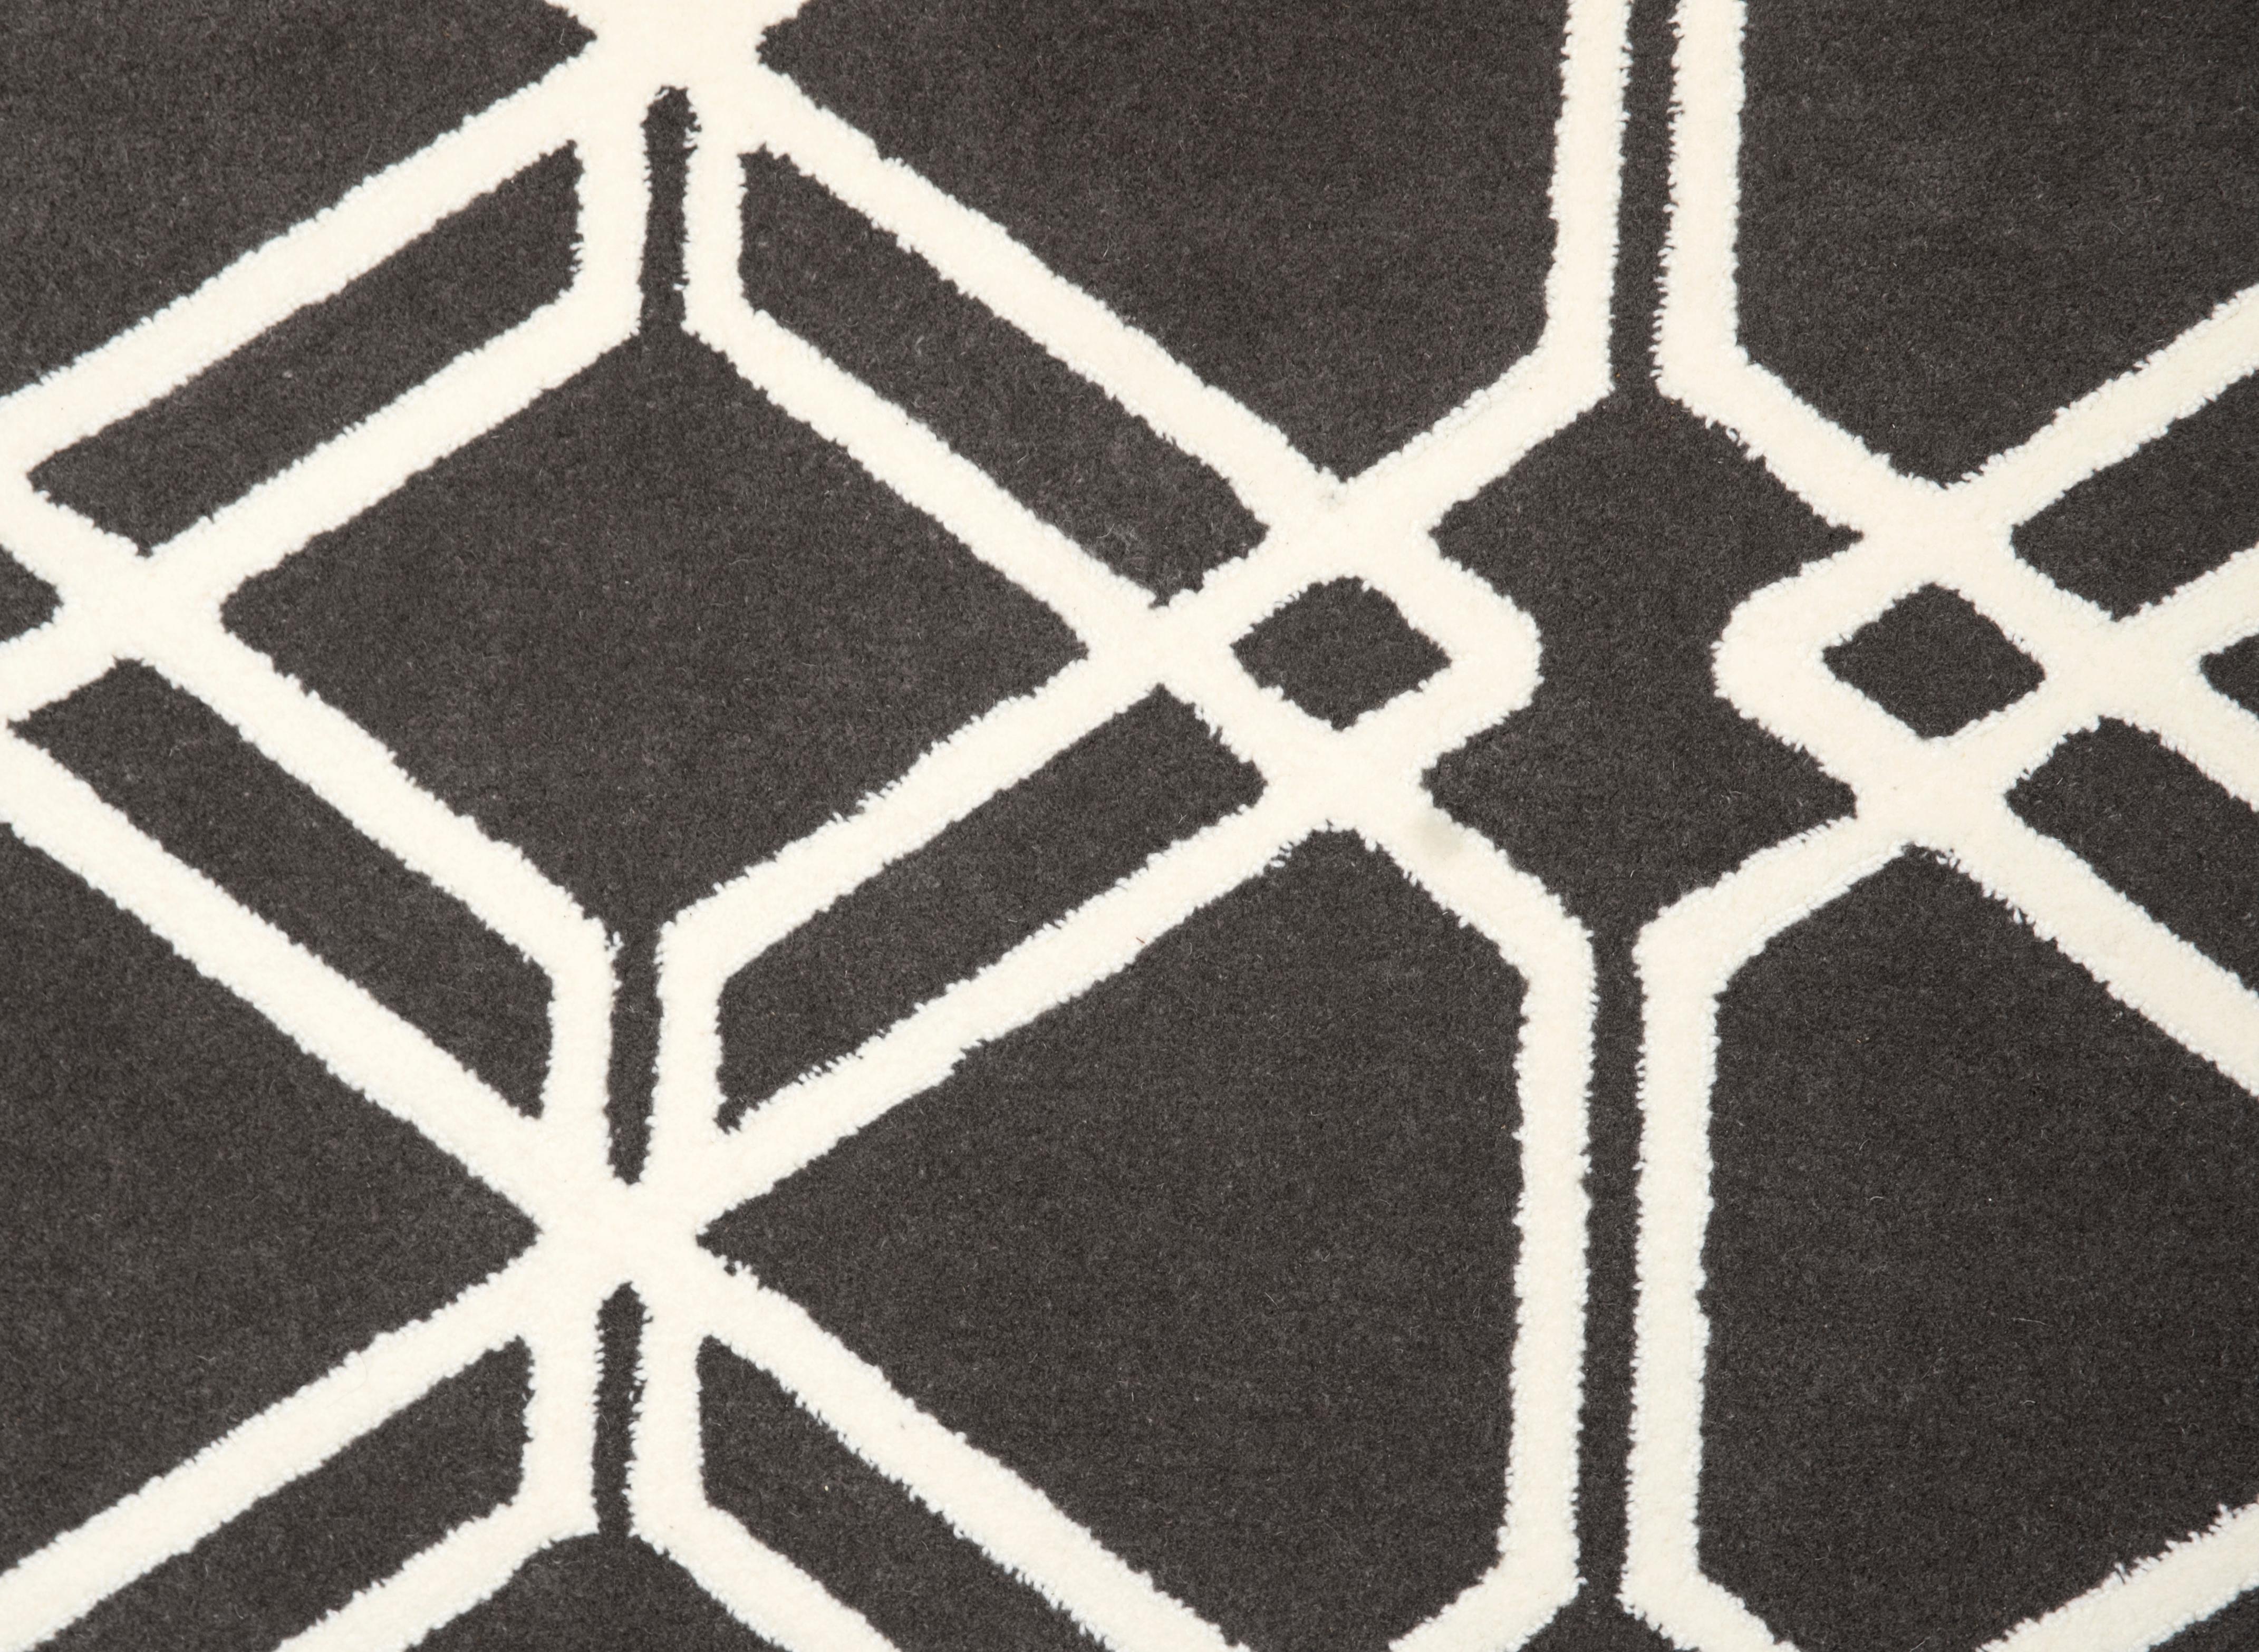 Ce tapis est fabriqué à la main en Espagne selon la technique du tuftage à la main.
Nous n'utilisons que les fils naturels les plus fins, 100% pure laine vierge avec une épaisseur de 15mm. 

- Personnalisez dans n'importe quelle taille et dans